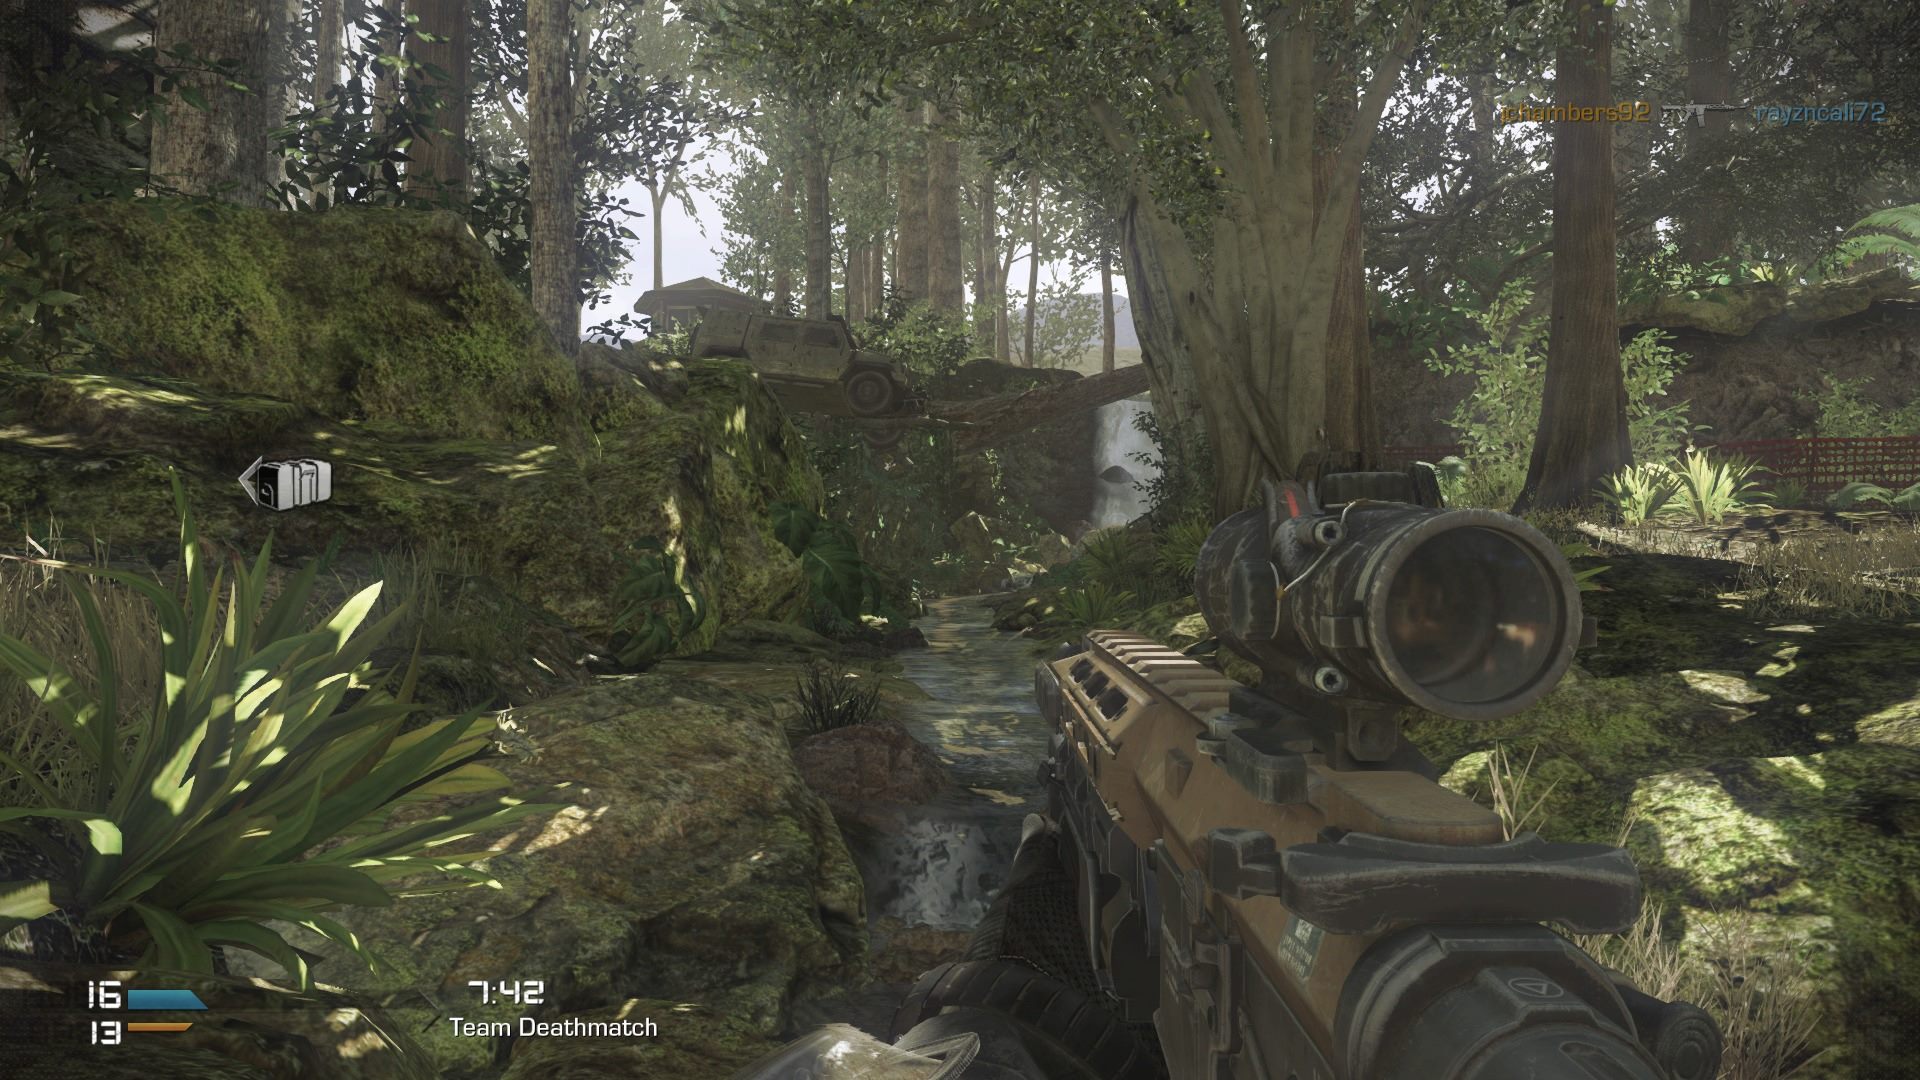 Ps4版 Call Of Duty Ghosts の1080pスクリーンショットが登場 Vitaを利用したリモートプレイ映像も Doope